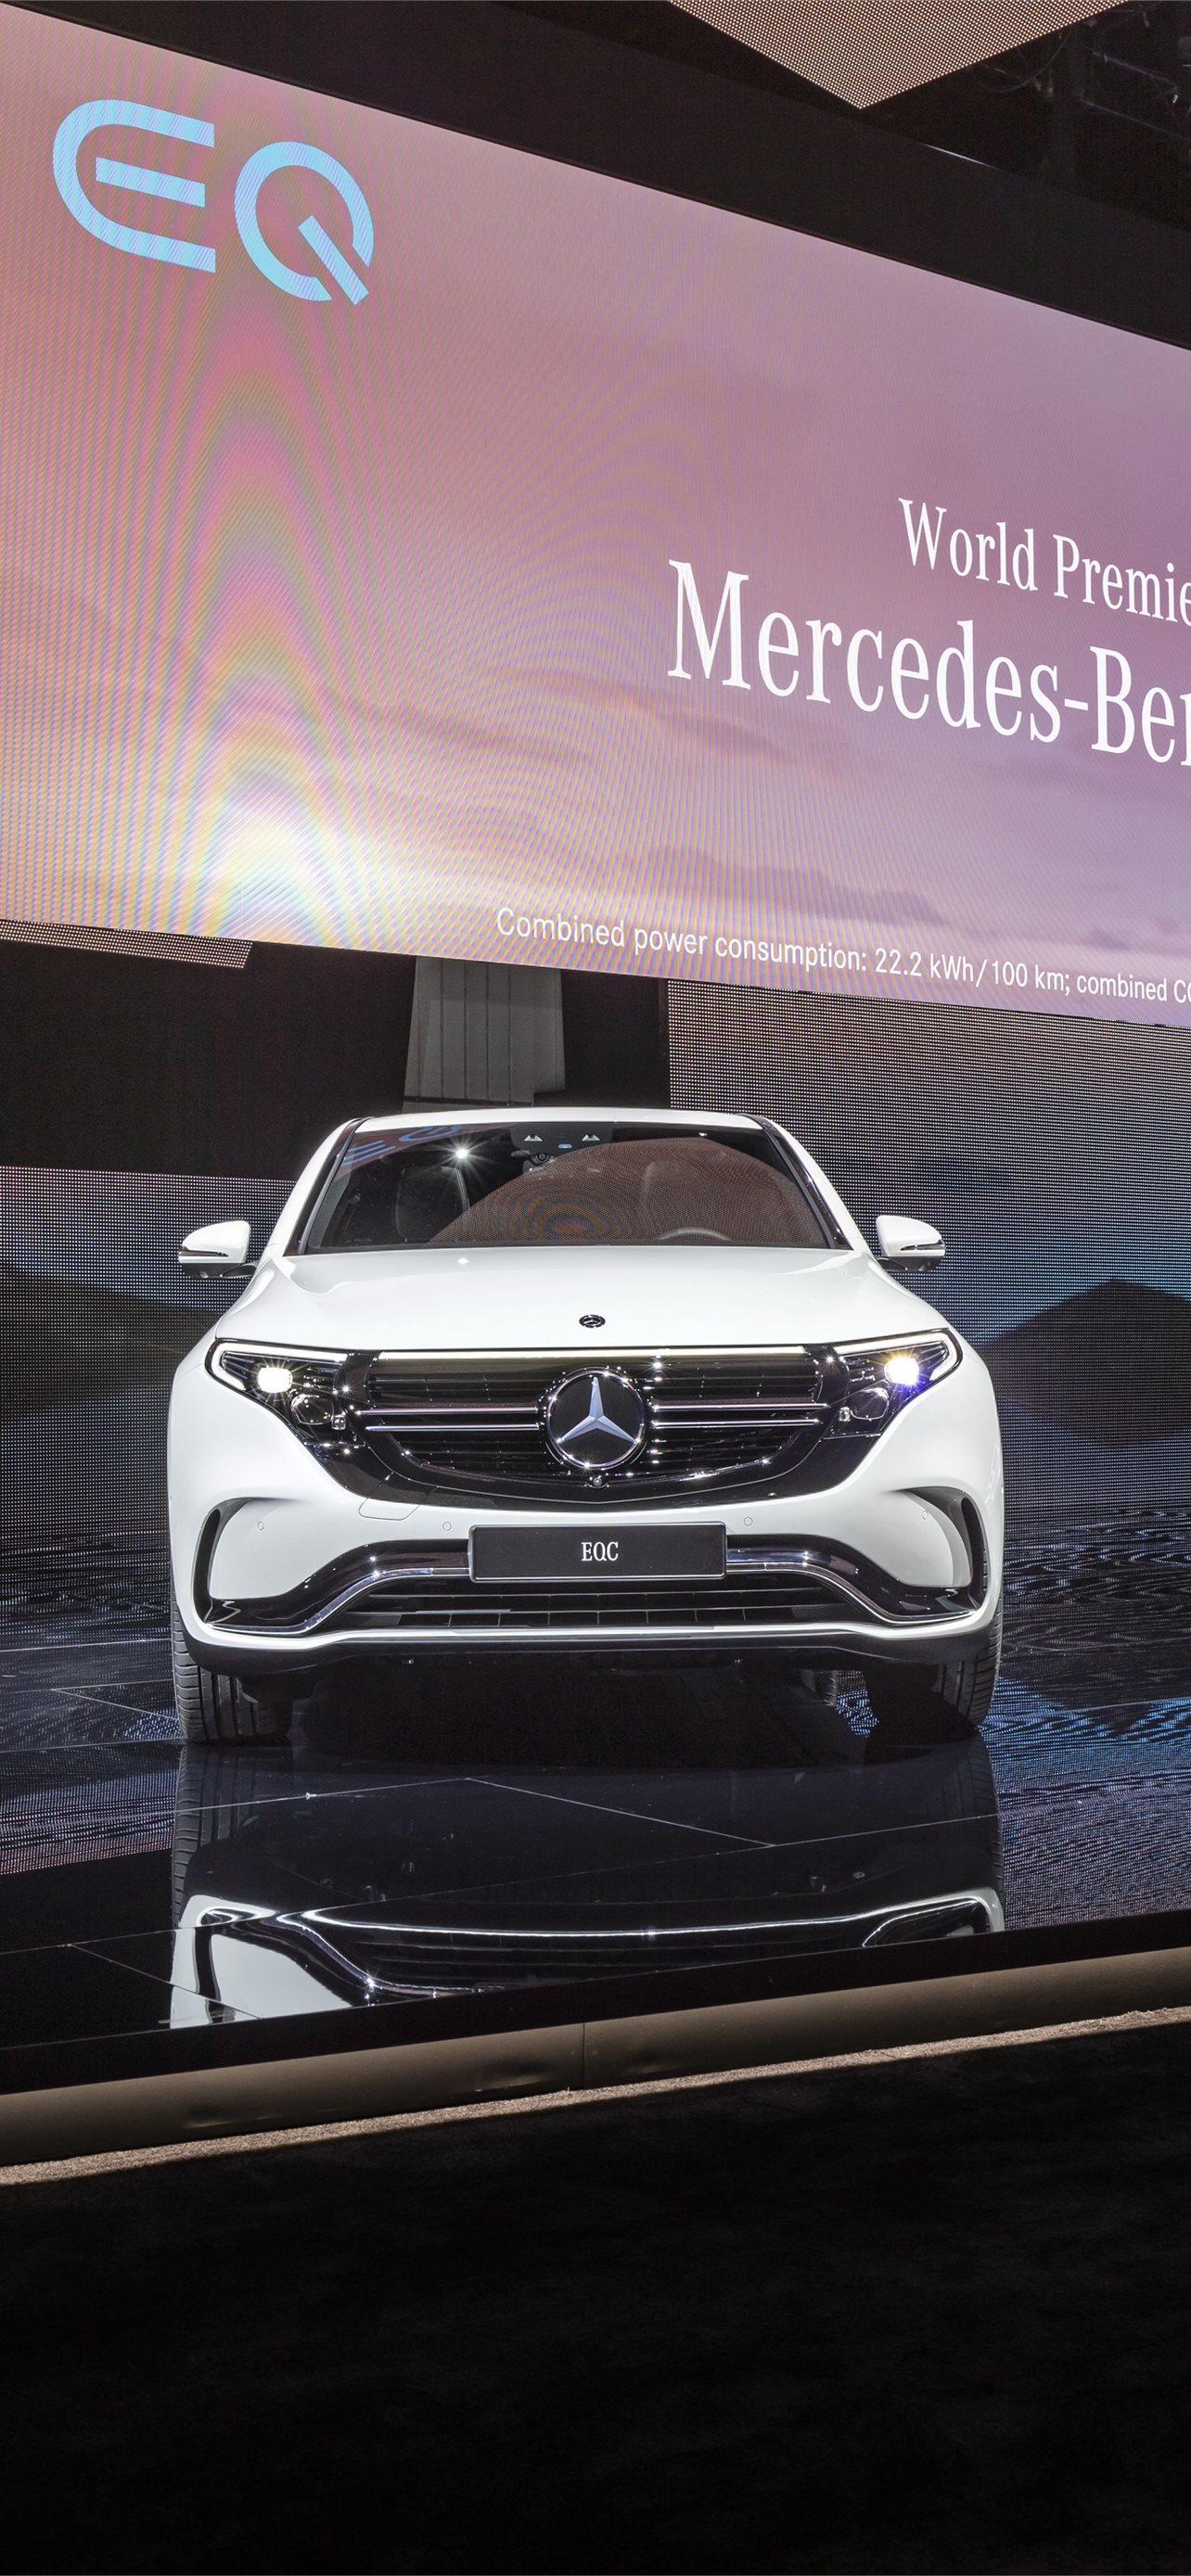 Mercedes-Benz EQC (2020) wallpaper | 1600x1100 | 1327337 | WallpaperUP